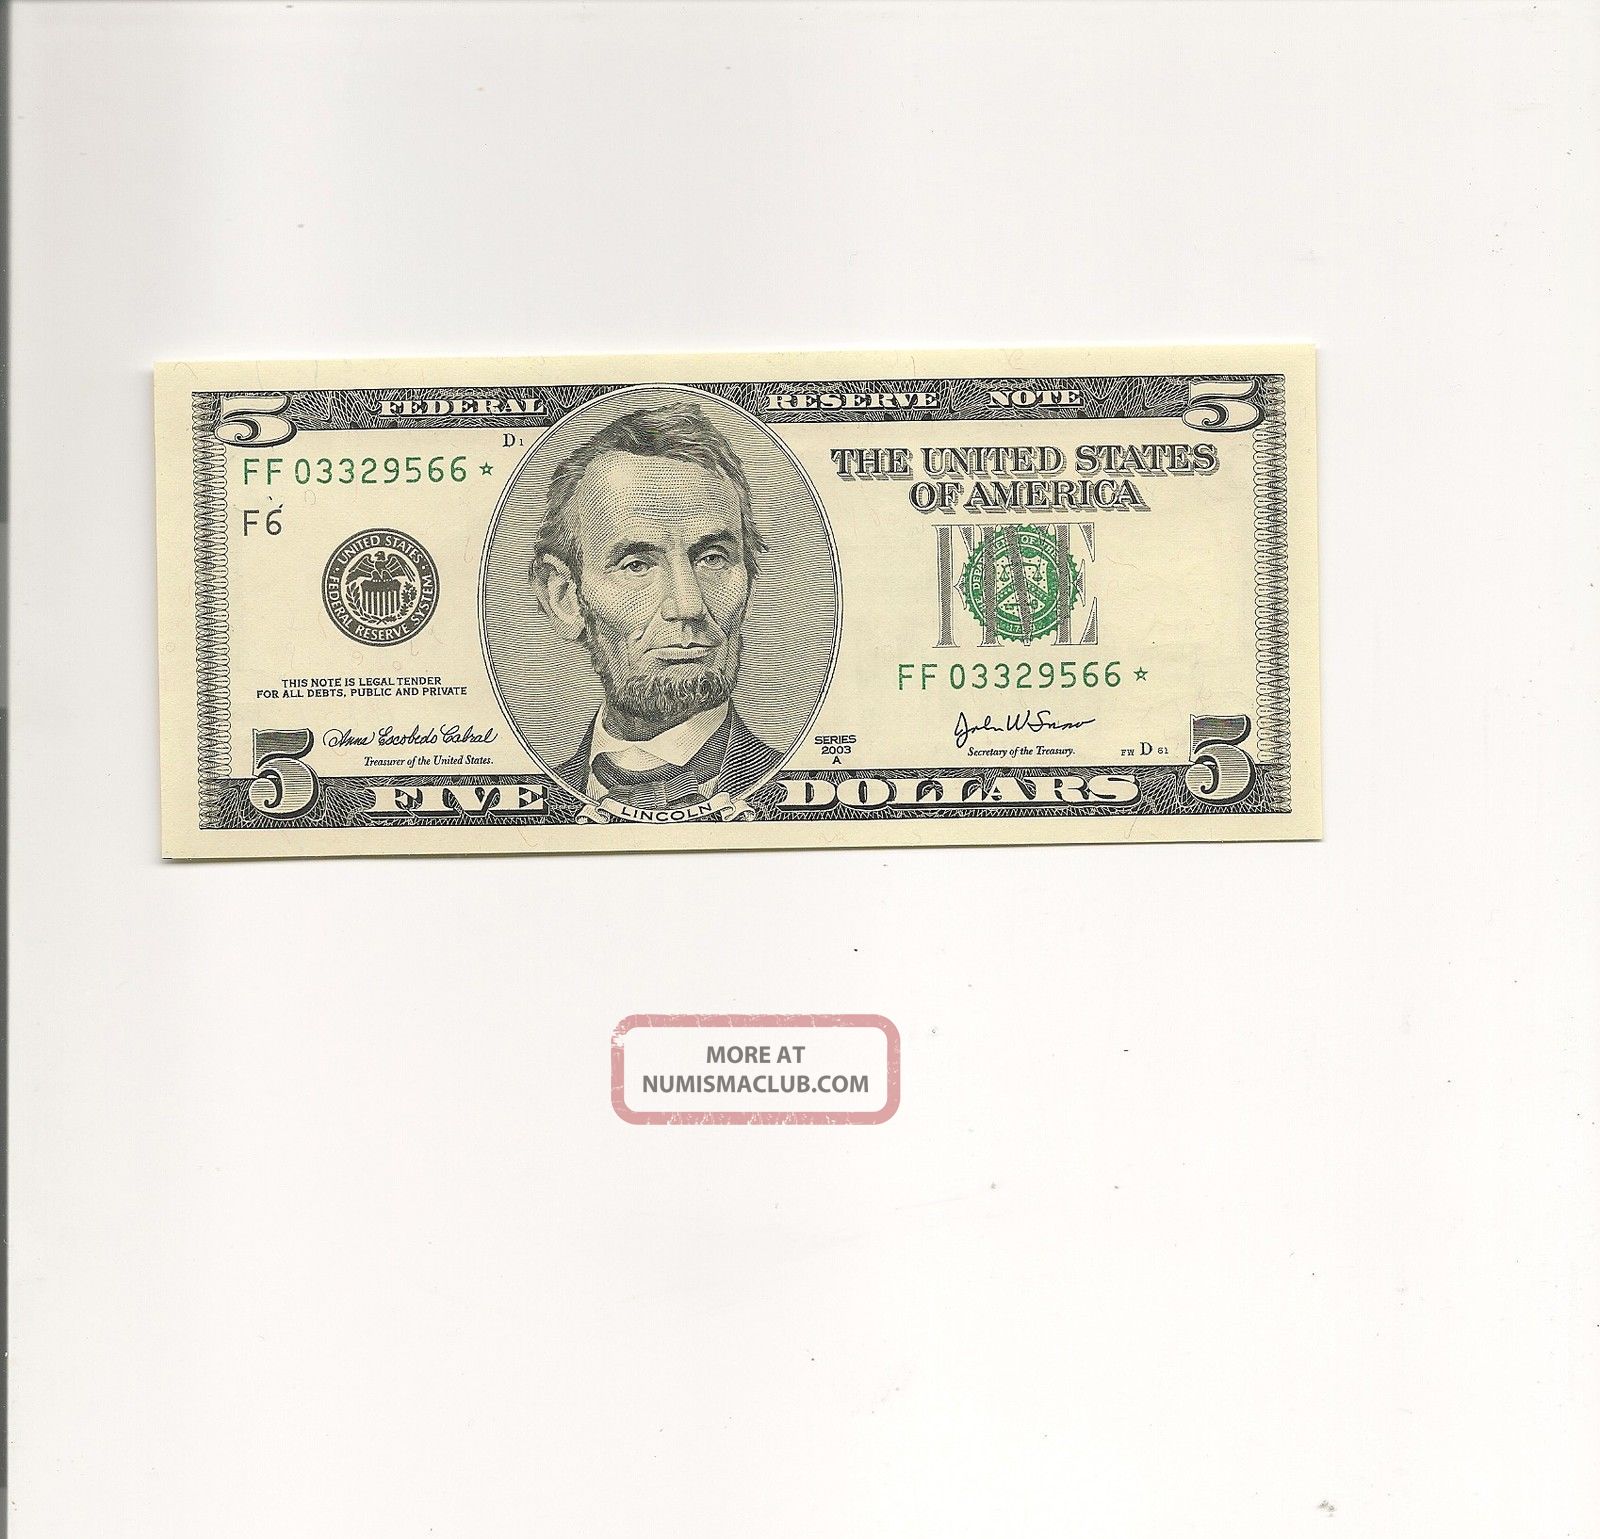 2003a $5 Star Atlanta F Frn Ff03329566 Gem Unc Small Size Notes photo